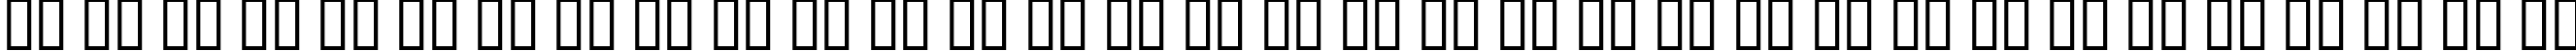 Пример написания русского алфавита шрифтом Interim SmallCaps